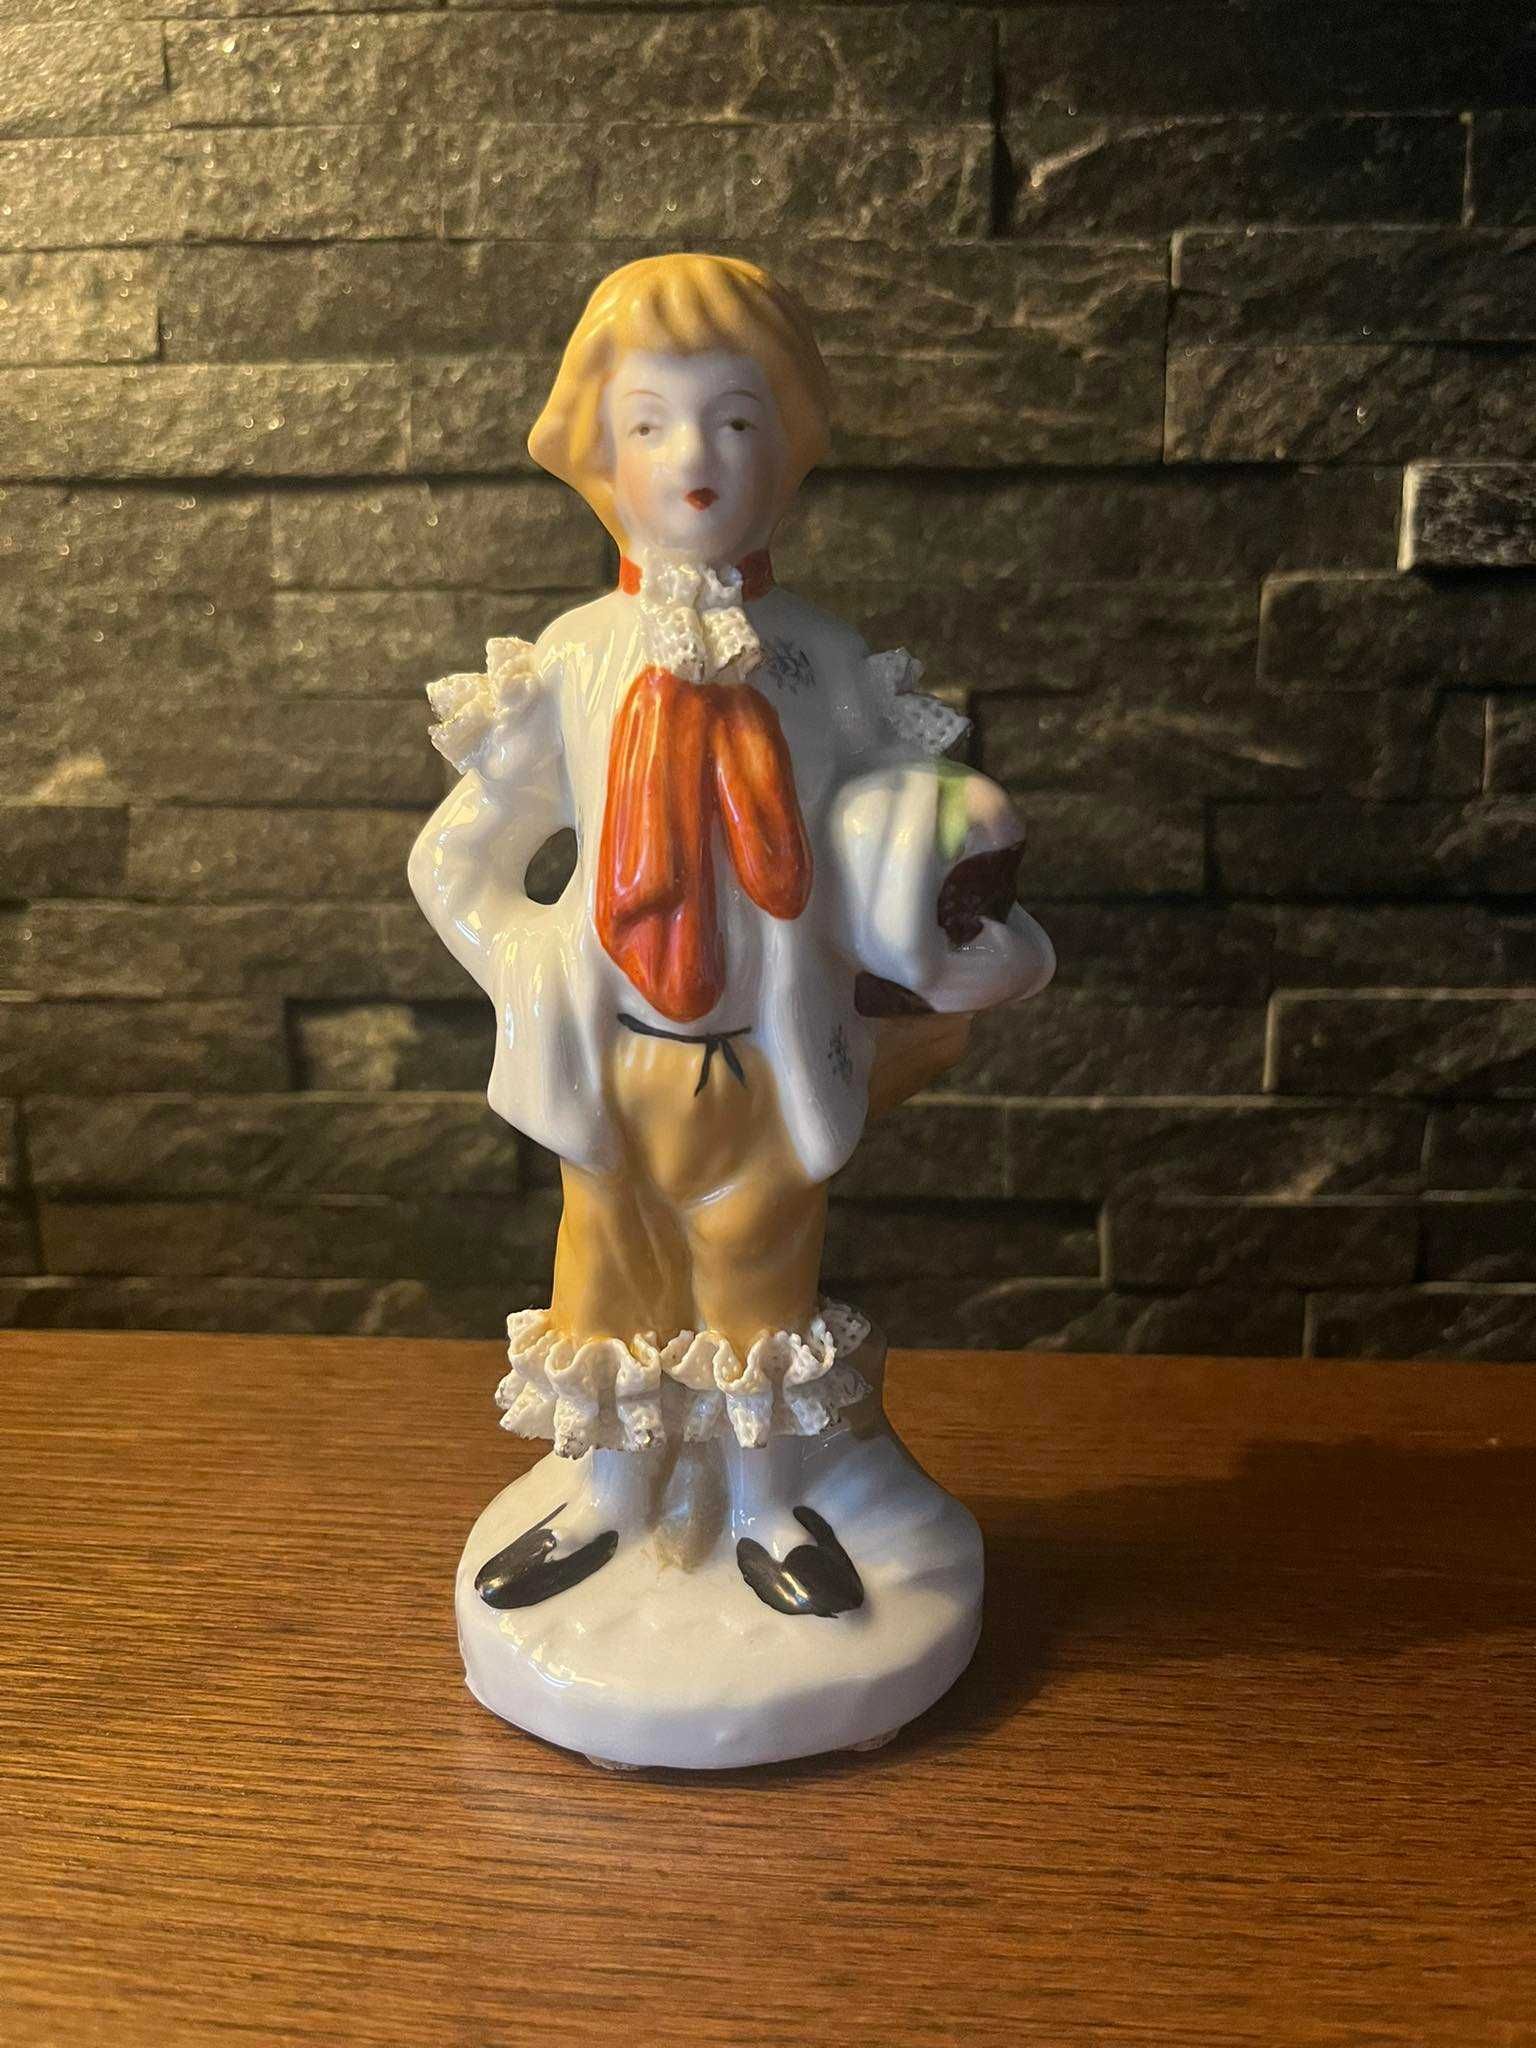 Panicz chłopiec figurka porcelana szkliwiona koronka